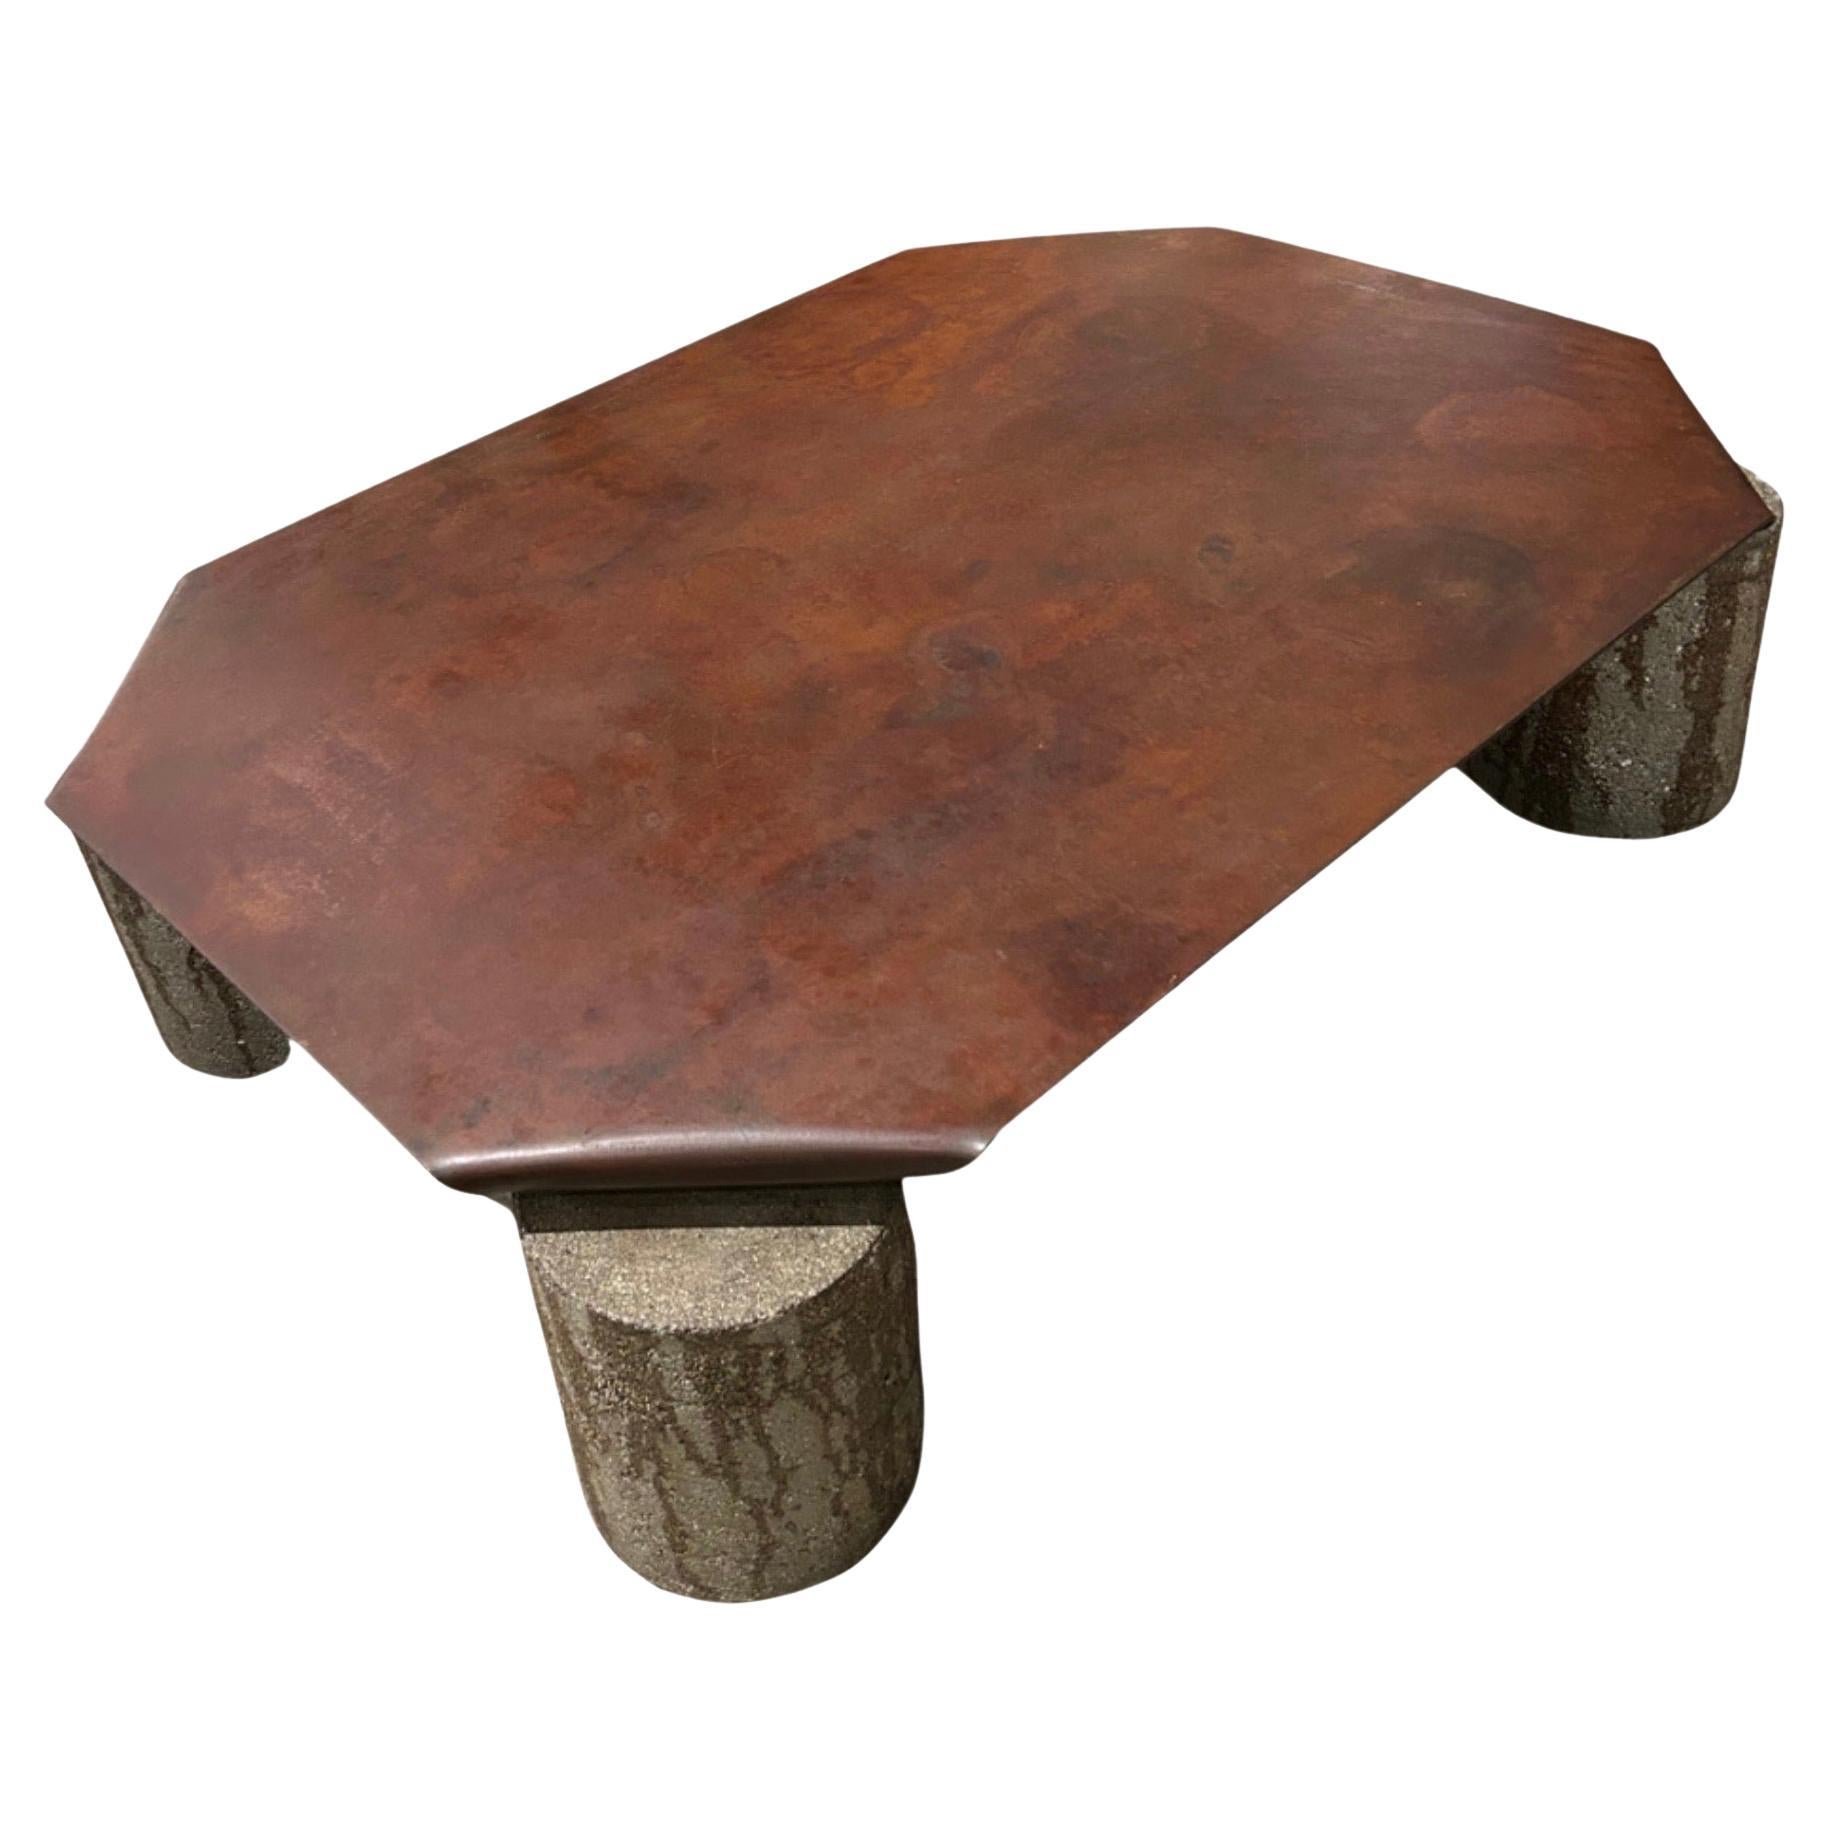 Table d'angle pliée en métal avec pieds en béton